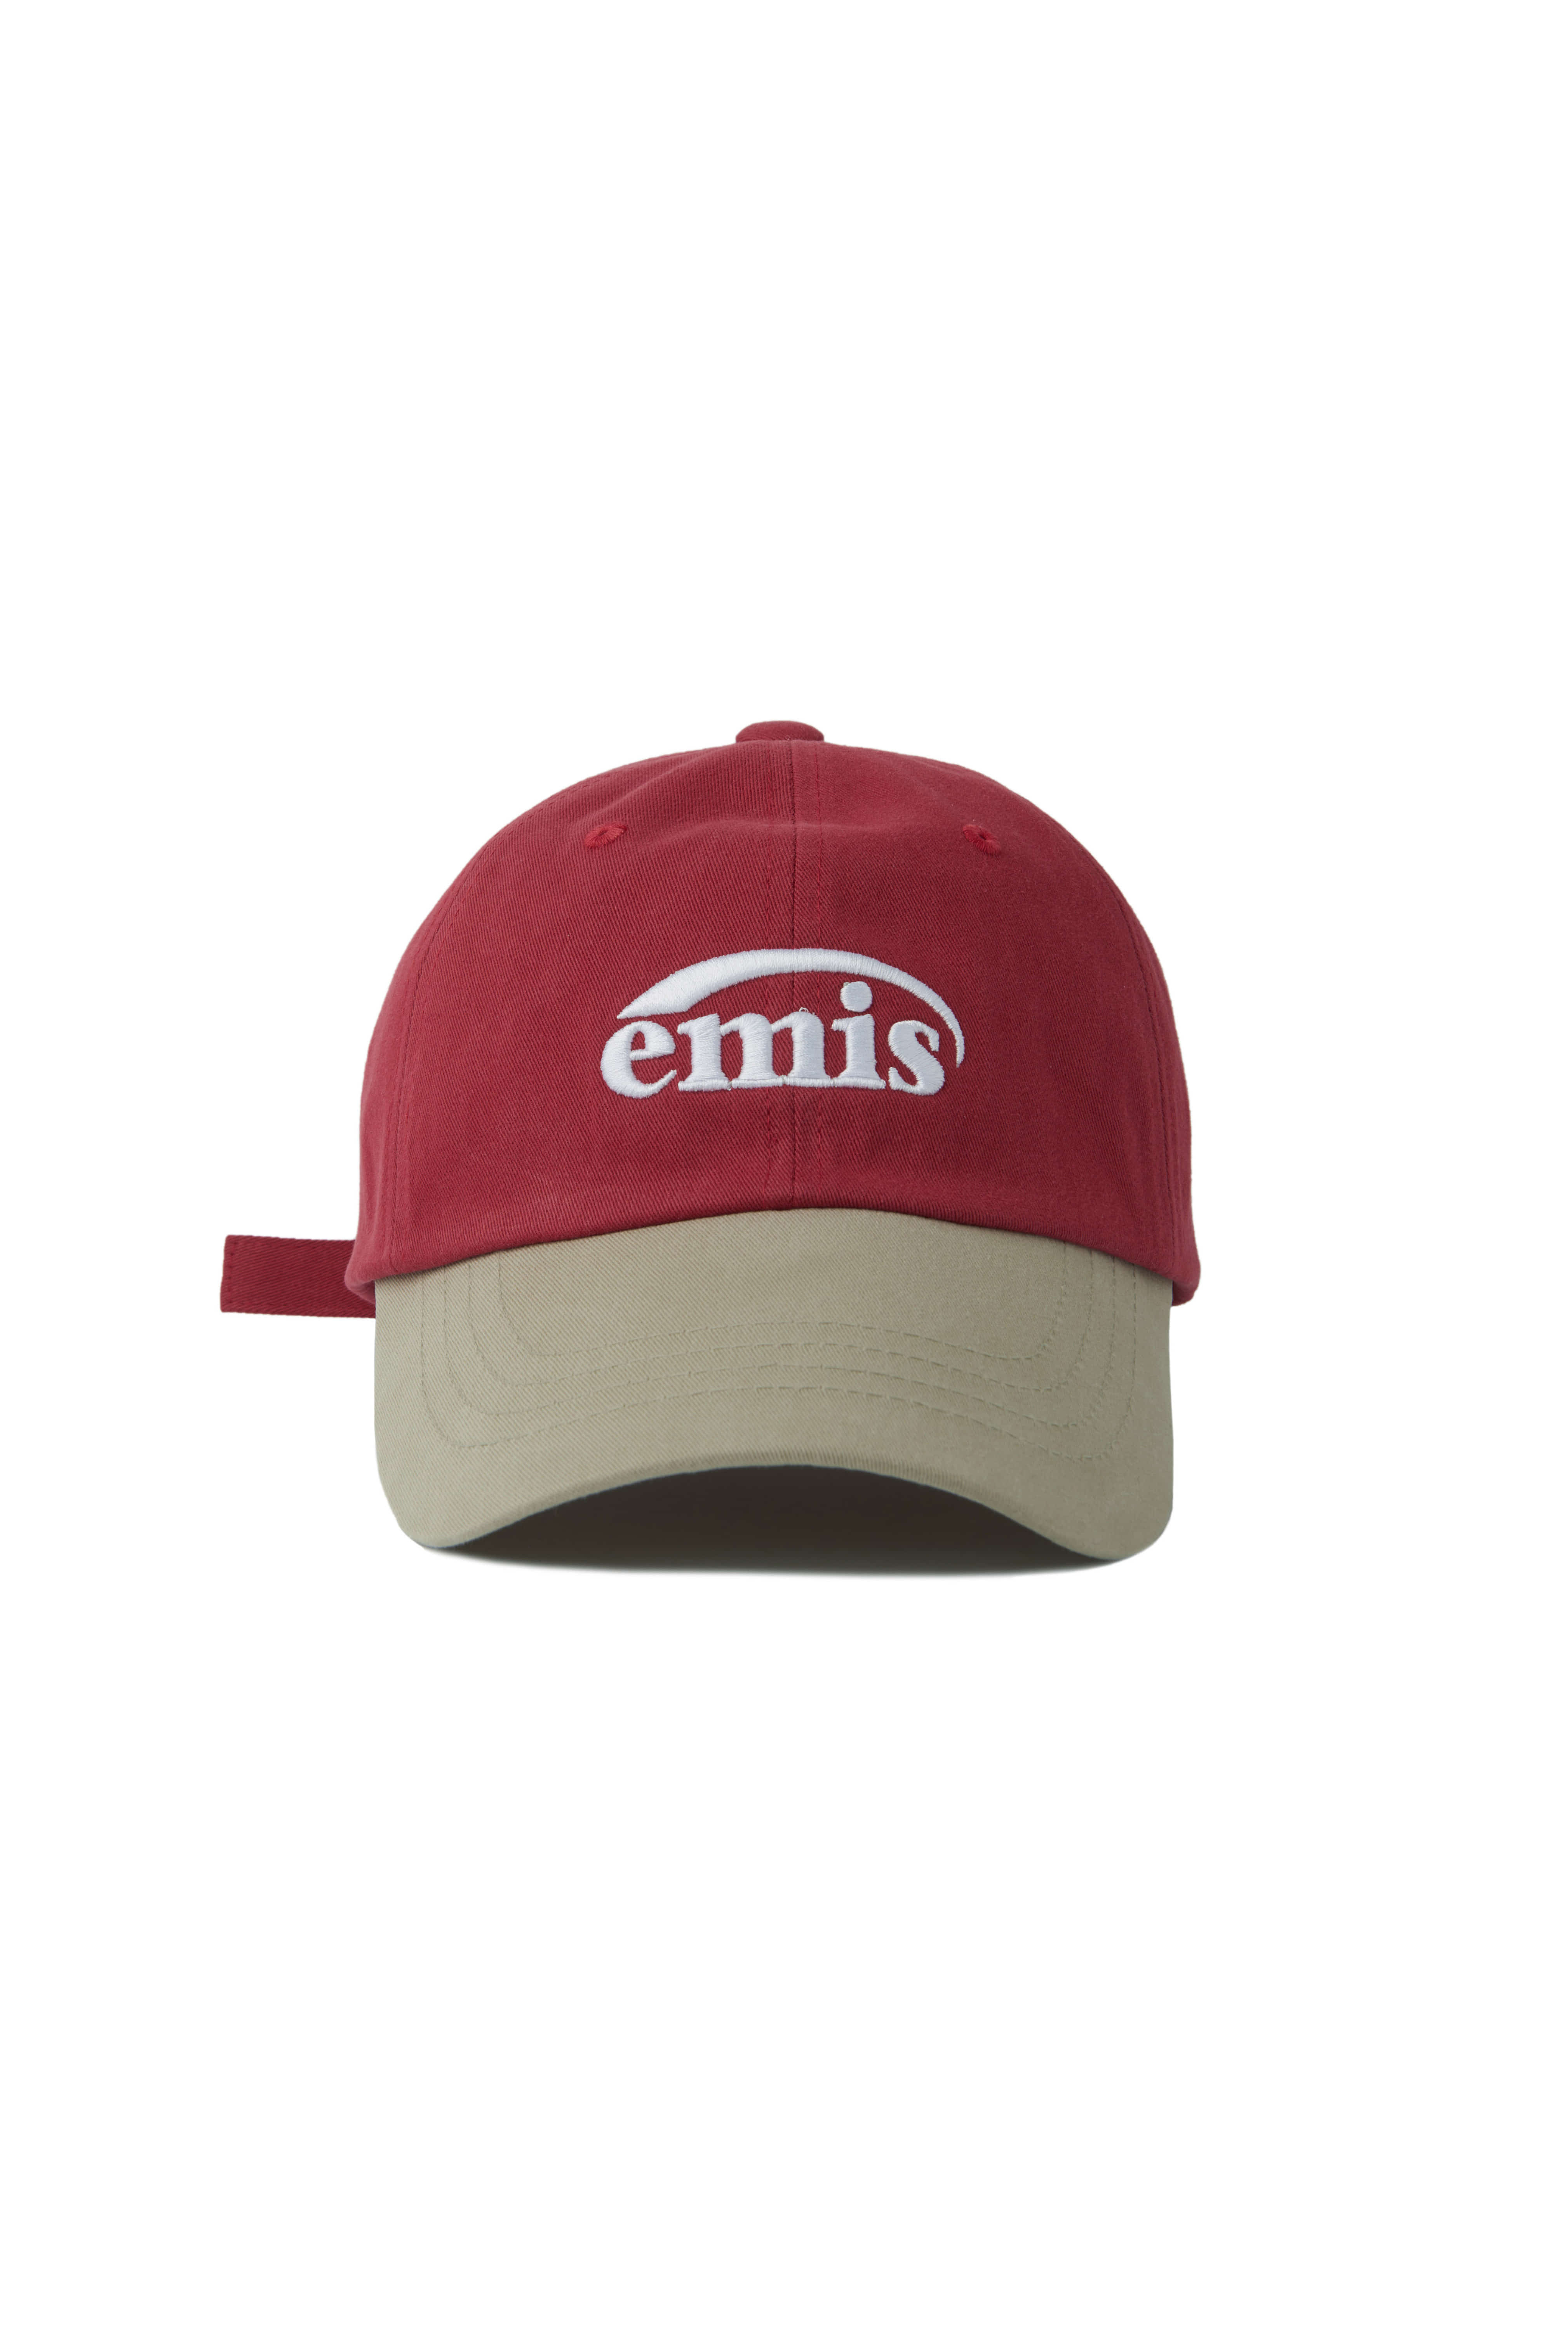 NEW LOGO MIX BALL CAP-BEIGE/RED